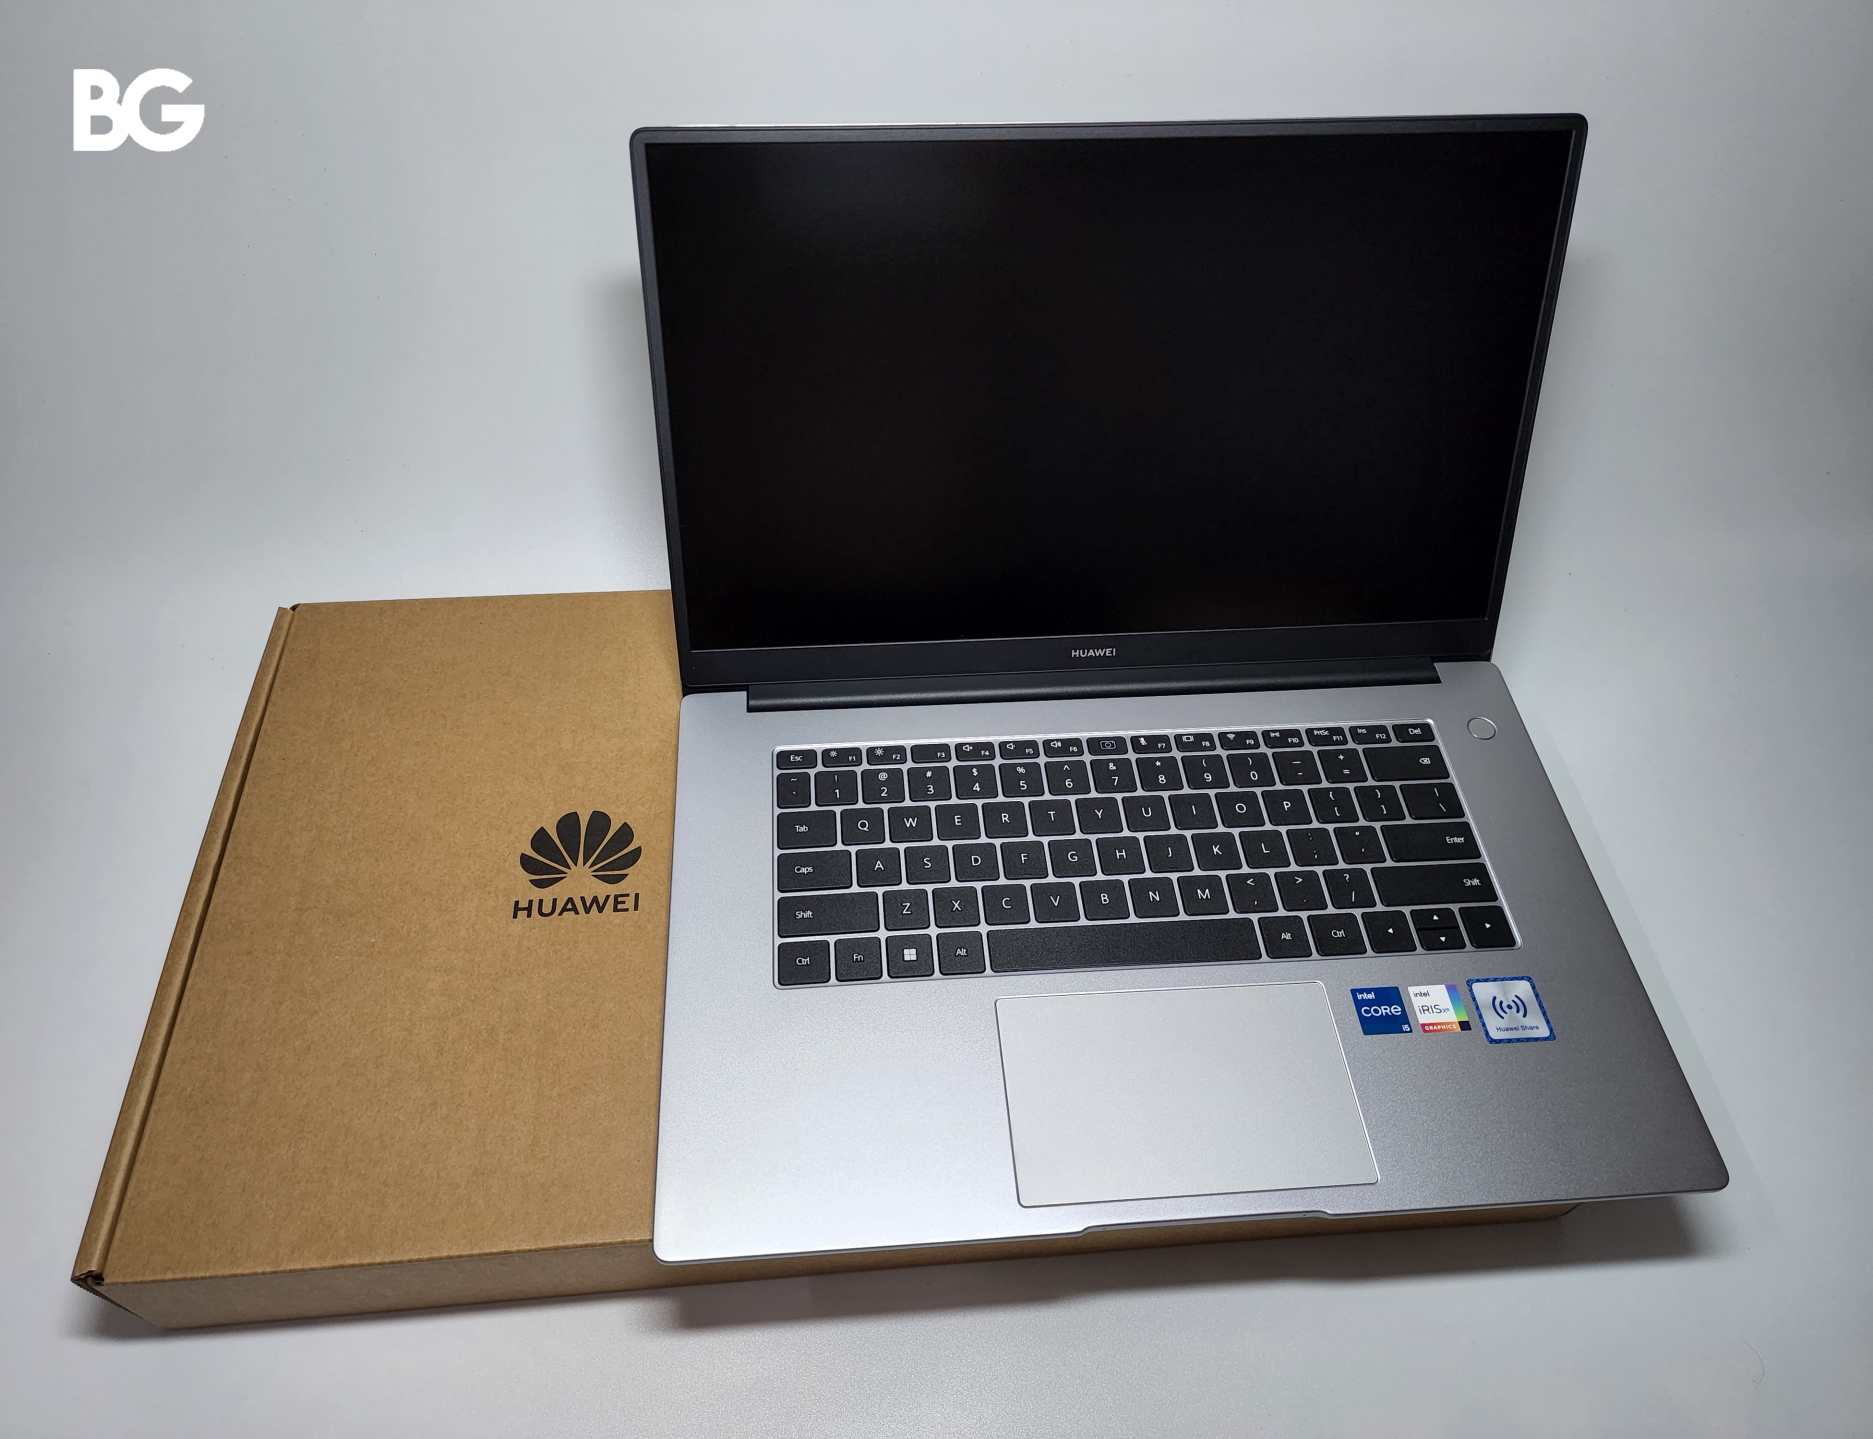 Huawei MateBook D 15-53010TUY -  External Reviews